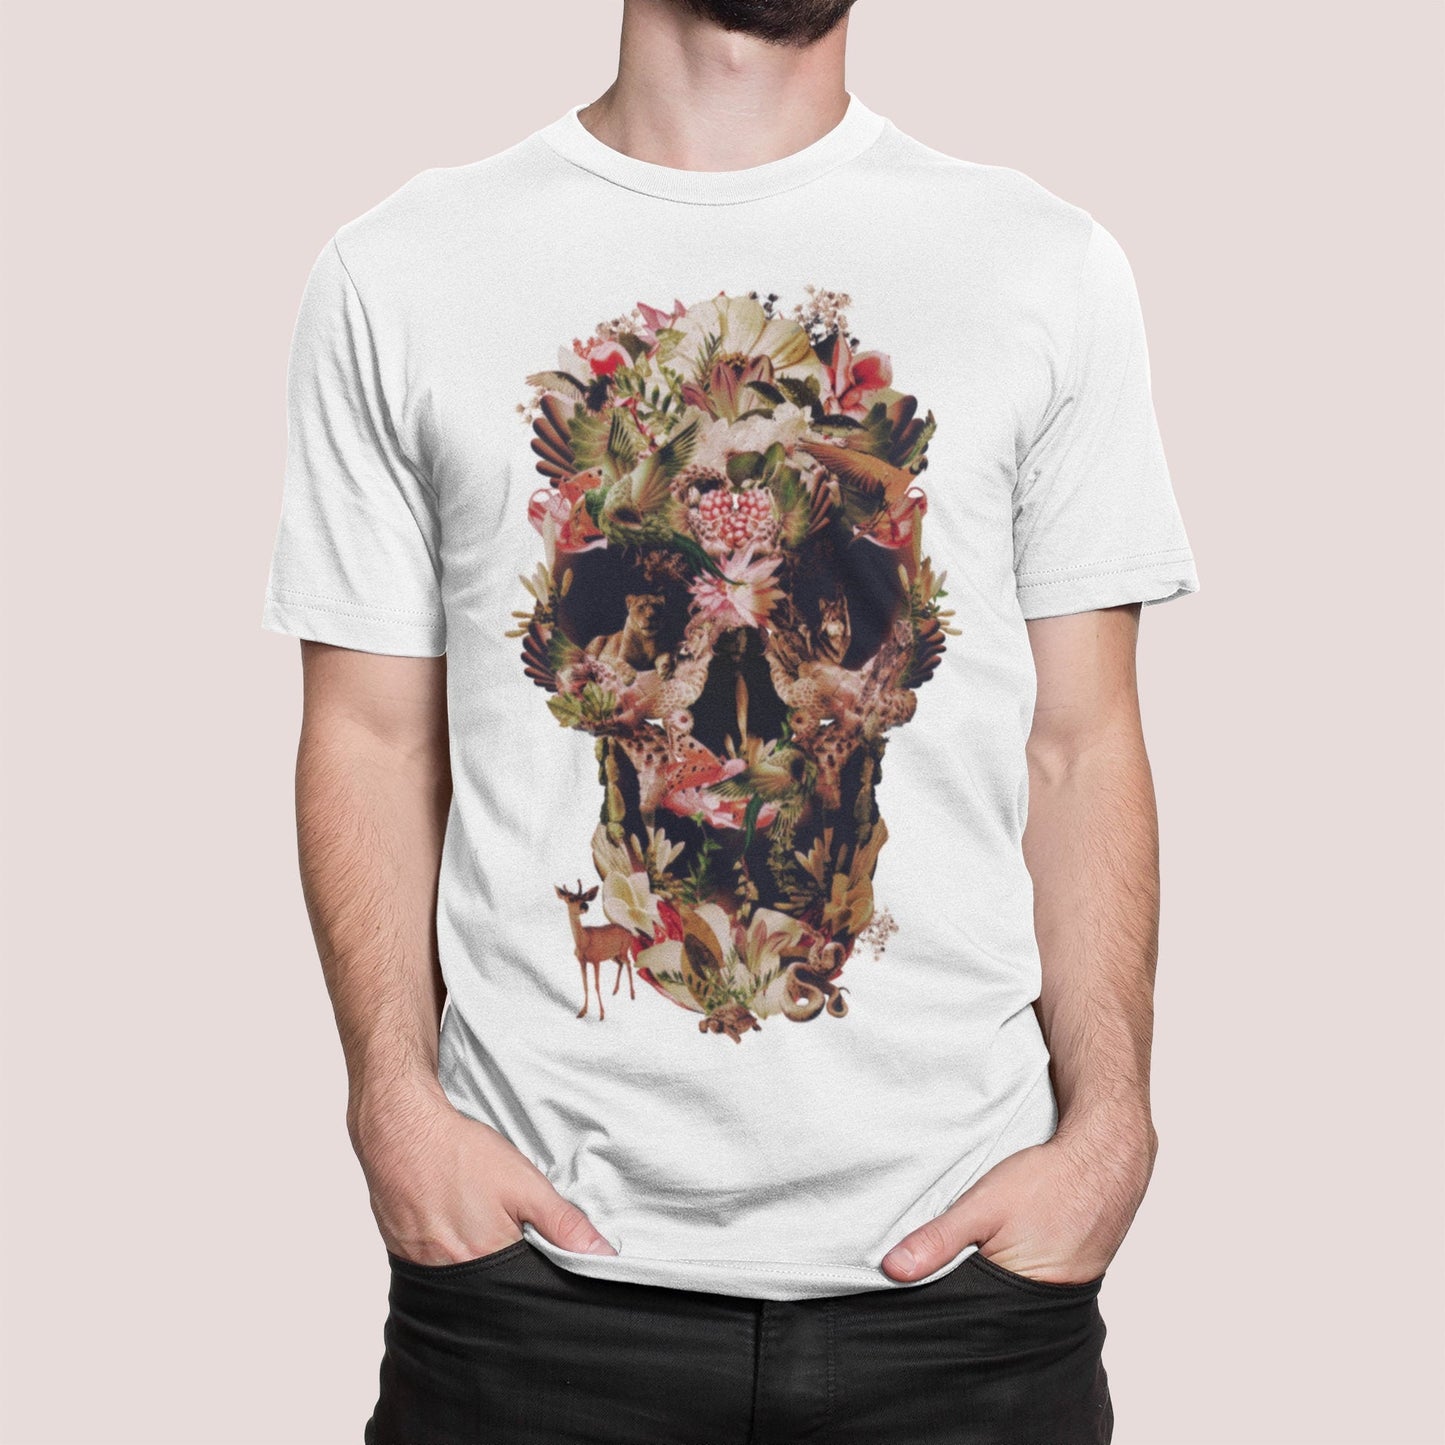 Jungle Skull Men's T-shirt, Flower Skull Mens Graphic Tee, Sugar Skull Mens TShirt, Bella Canvas Skull Print Shirt Gift For Him